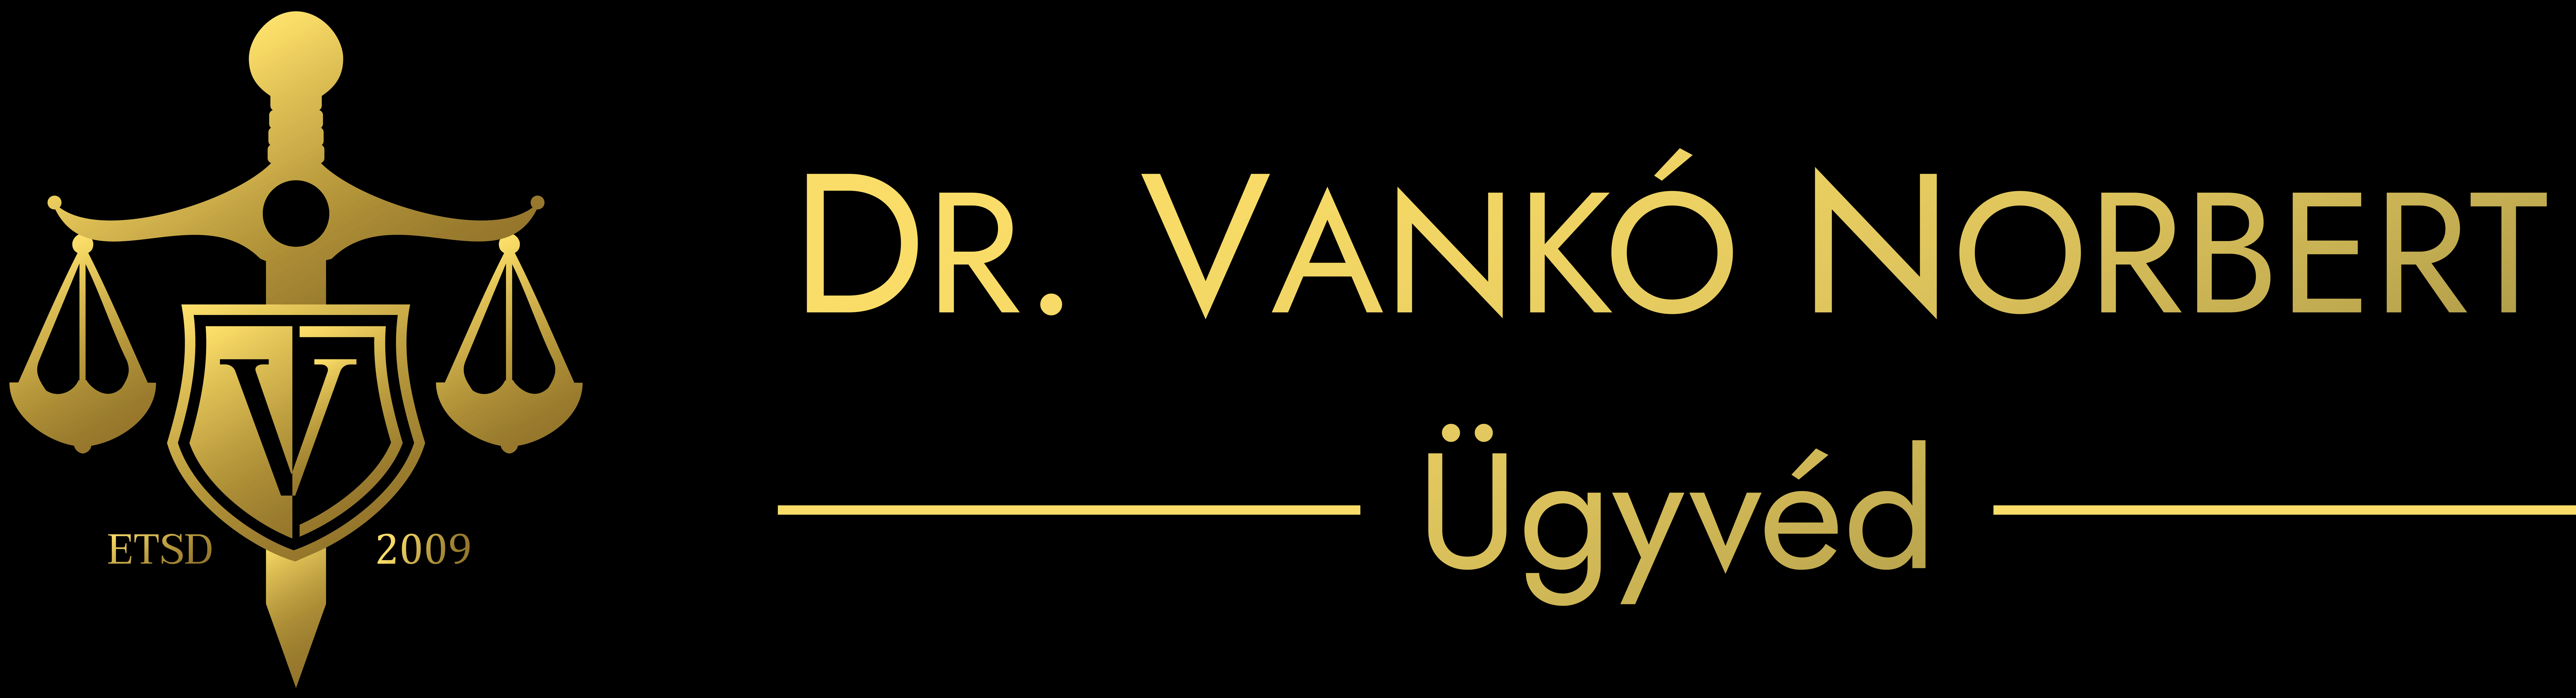 Dr. Vankó Norbert - ügyvéd, kereskedelmi és adójogi szakjogász